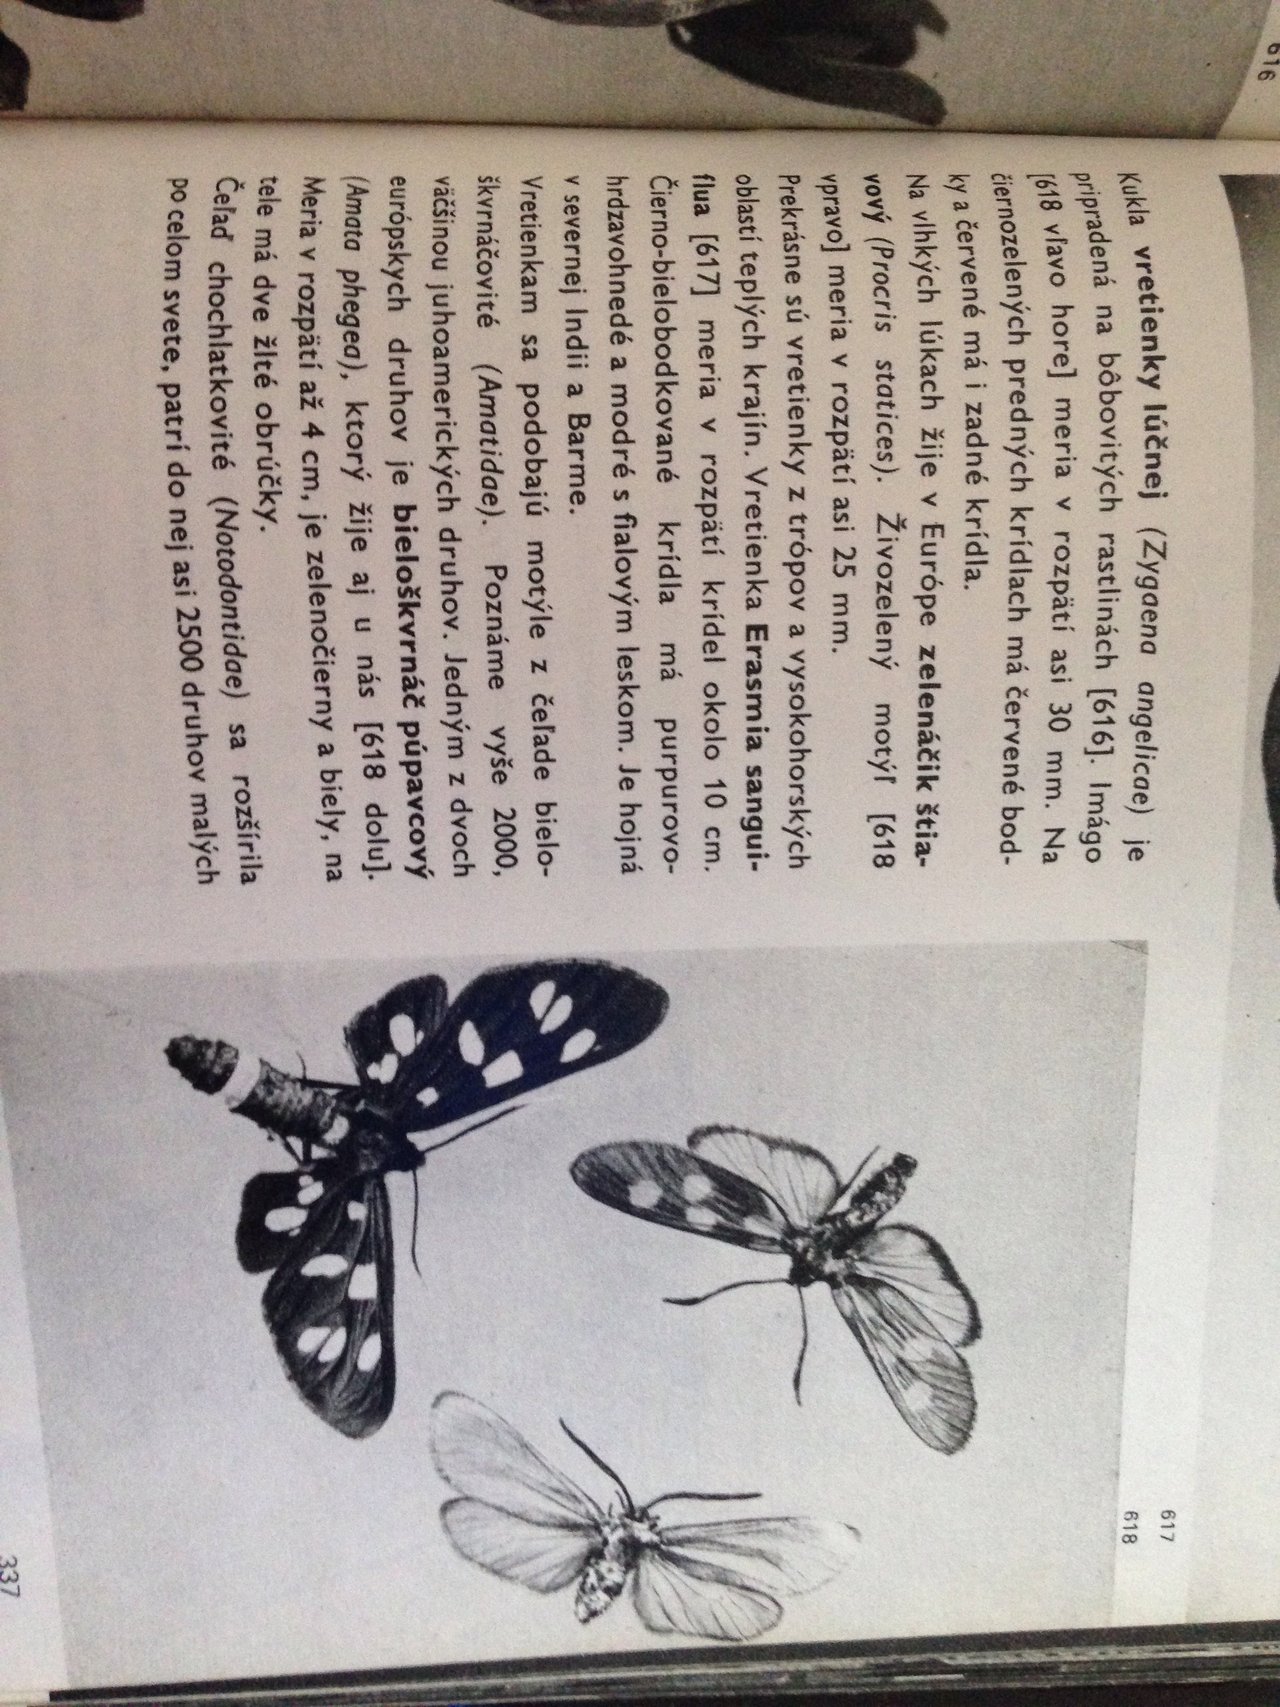 A tu je nás motýlik v atlase hmyzu z roku 1970. 